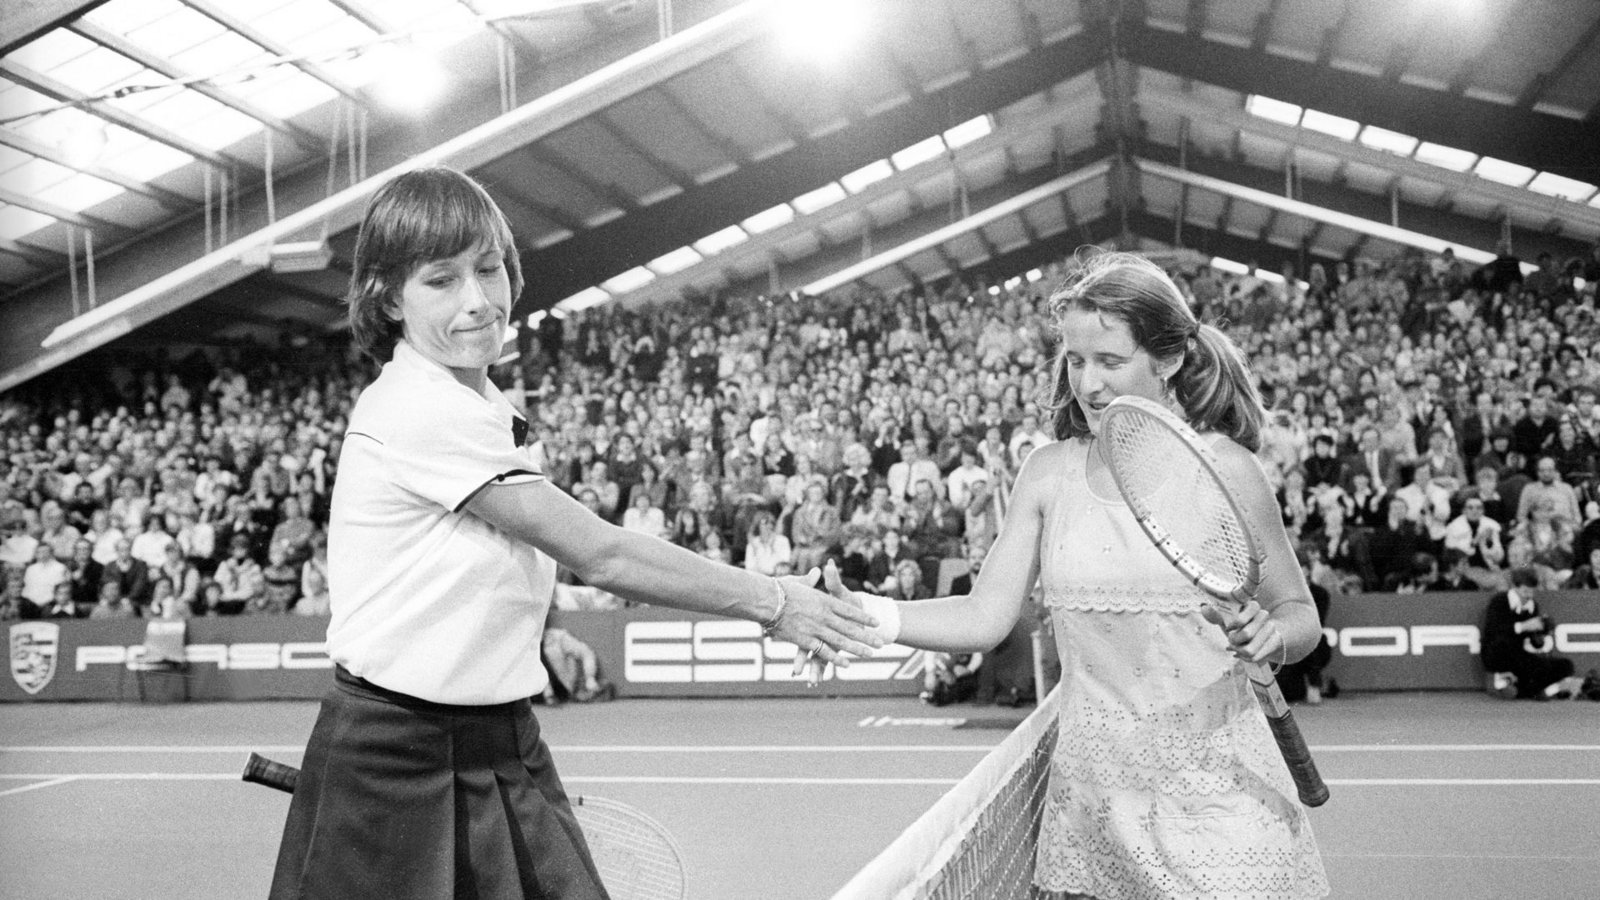 Austin gegen Martina Navratilova hieß das Duell der Anfangsjahre. 1982 siegte erstmals Navratilova.Foto: imago